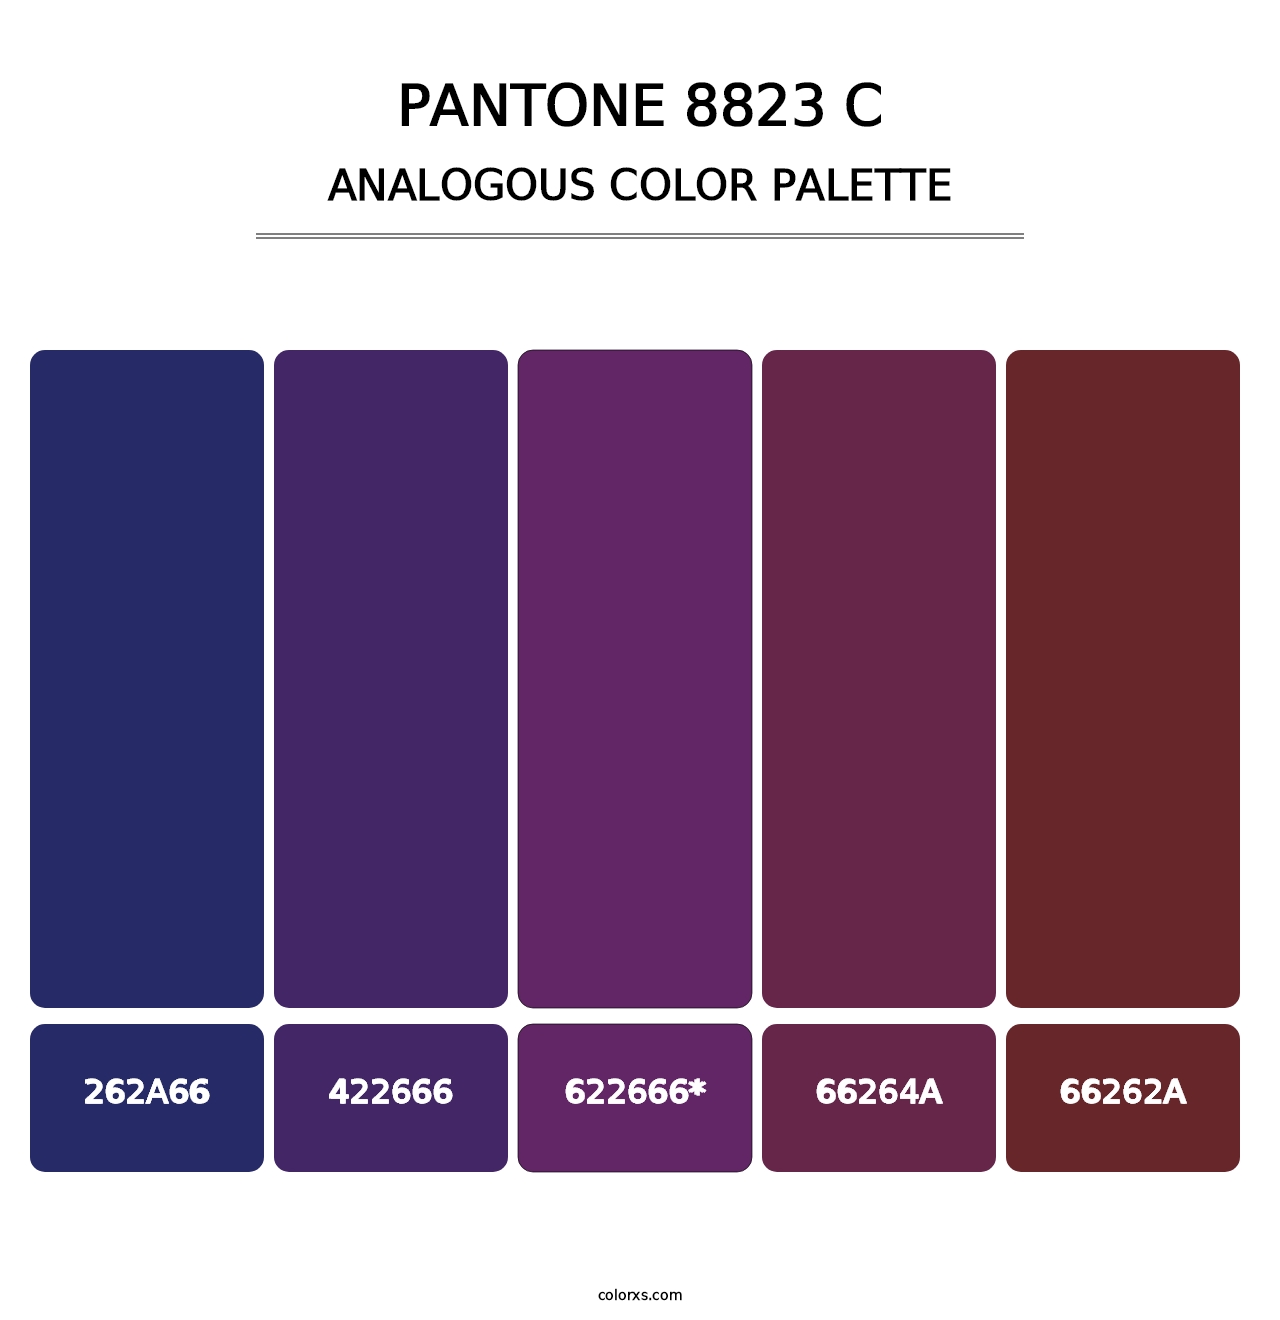 PANTONE 8823 C - Analogous Color Palette